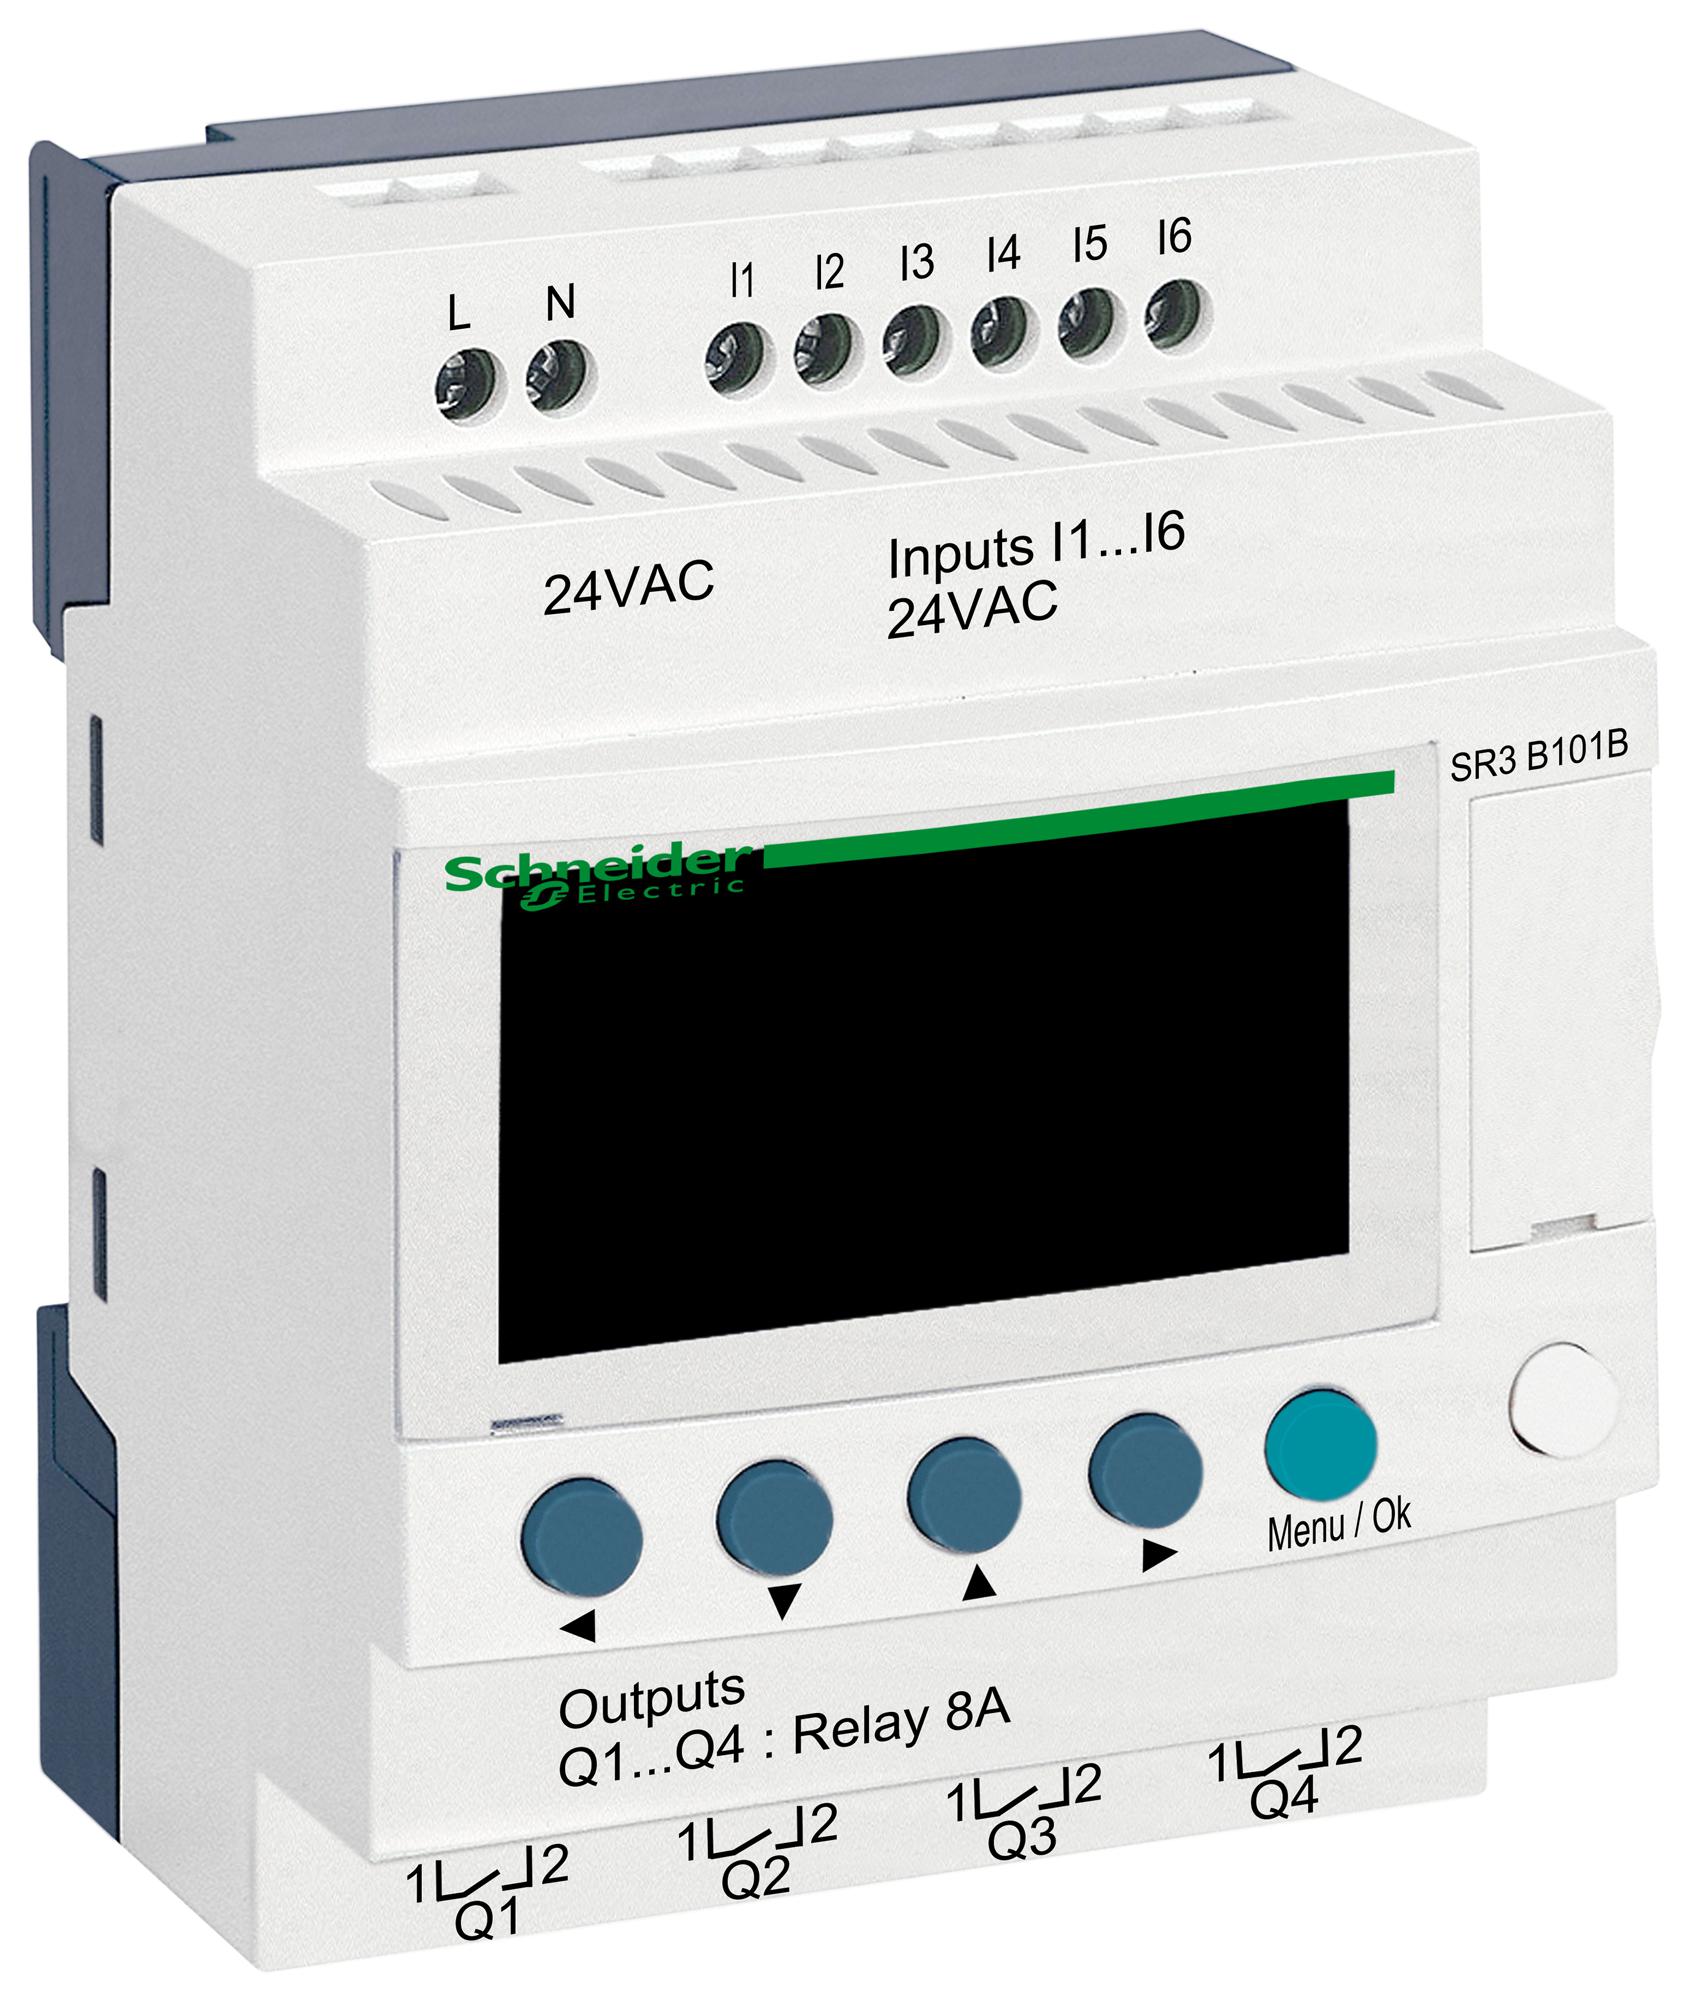 SR3B101B COMPACT SMART RELAY, 6I/P, 4O/P DIGITAL SCHNEIDER ELECTRIC